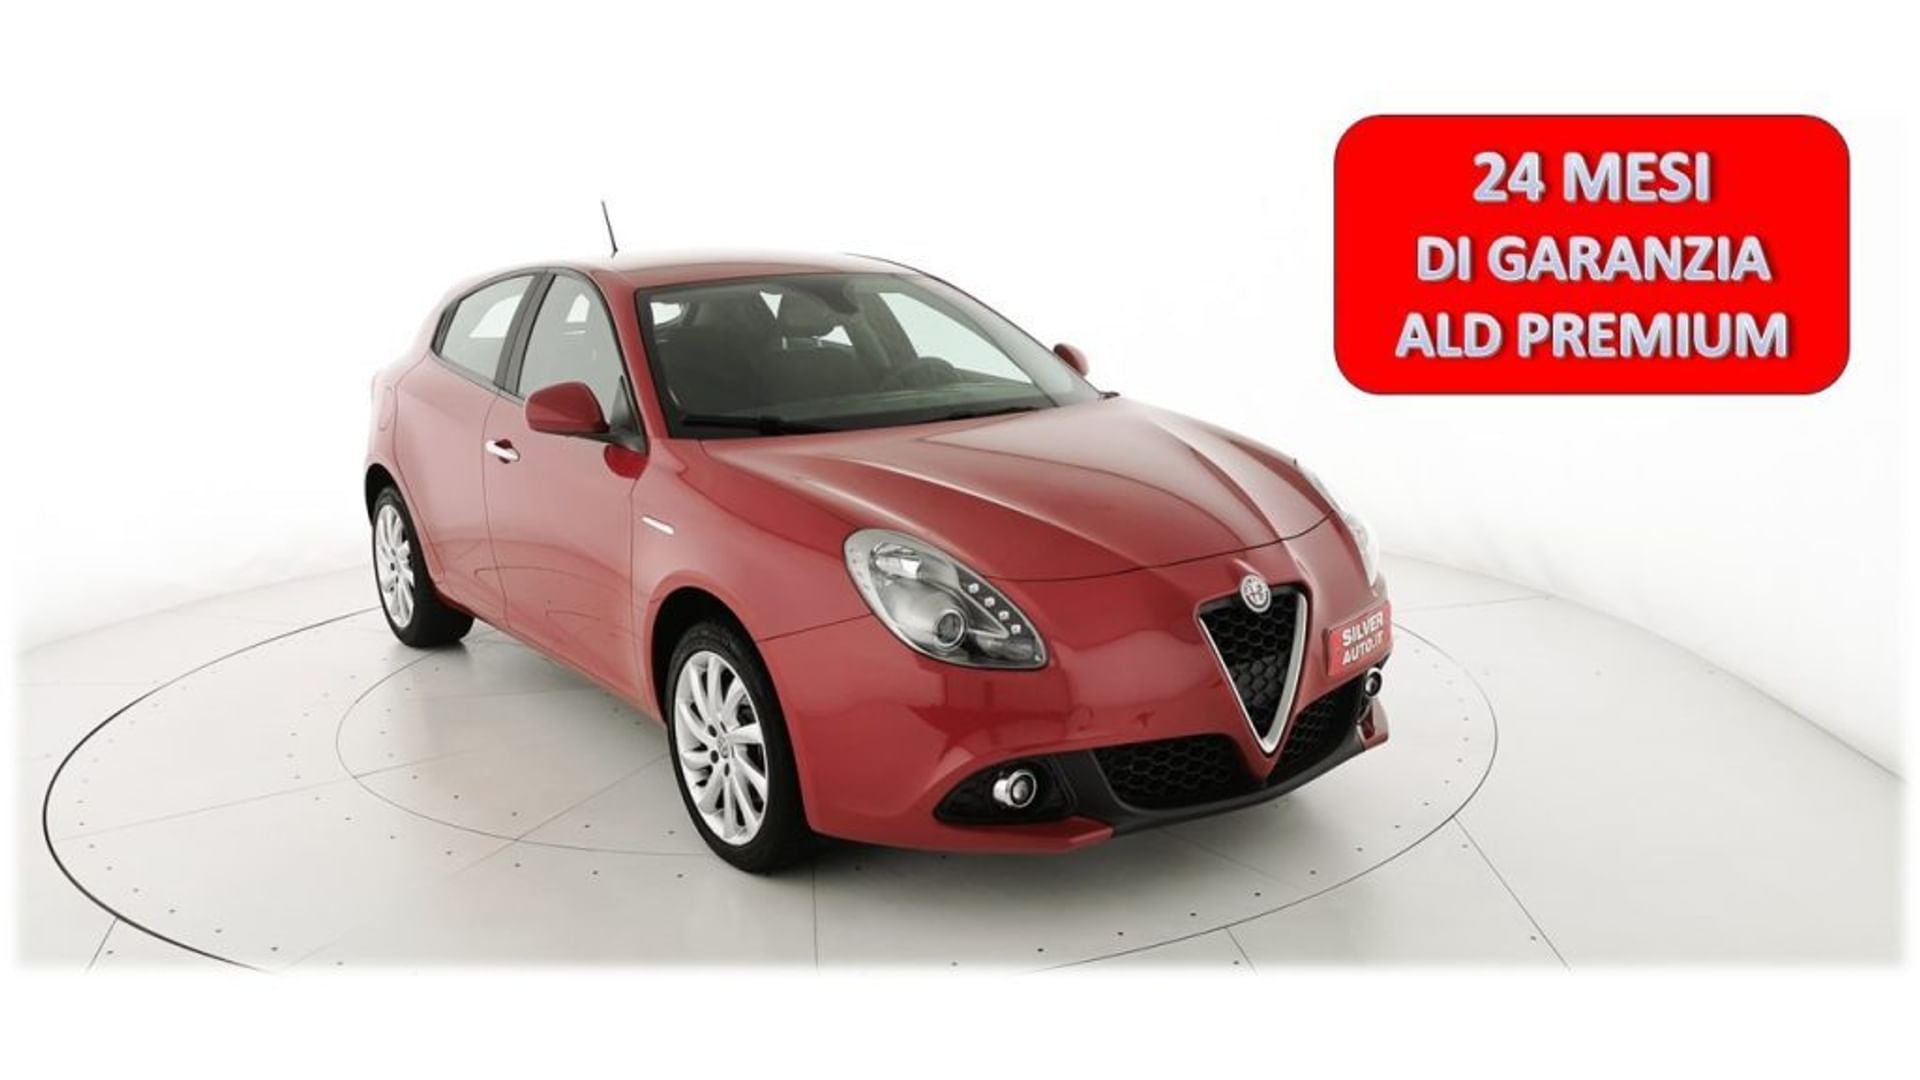 Alfa romeo Giulietta 2.0 JTDm 150 CV